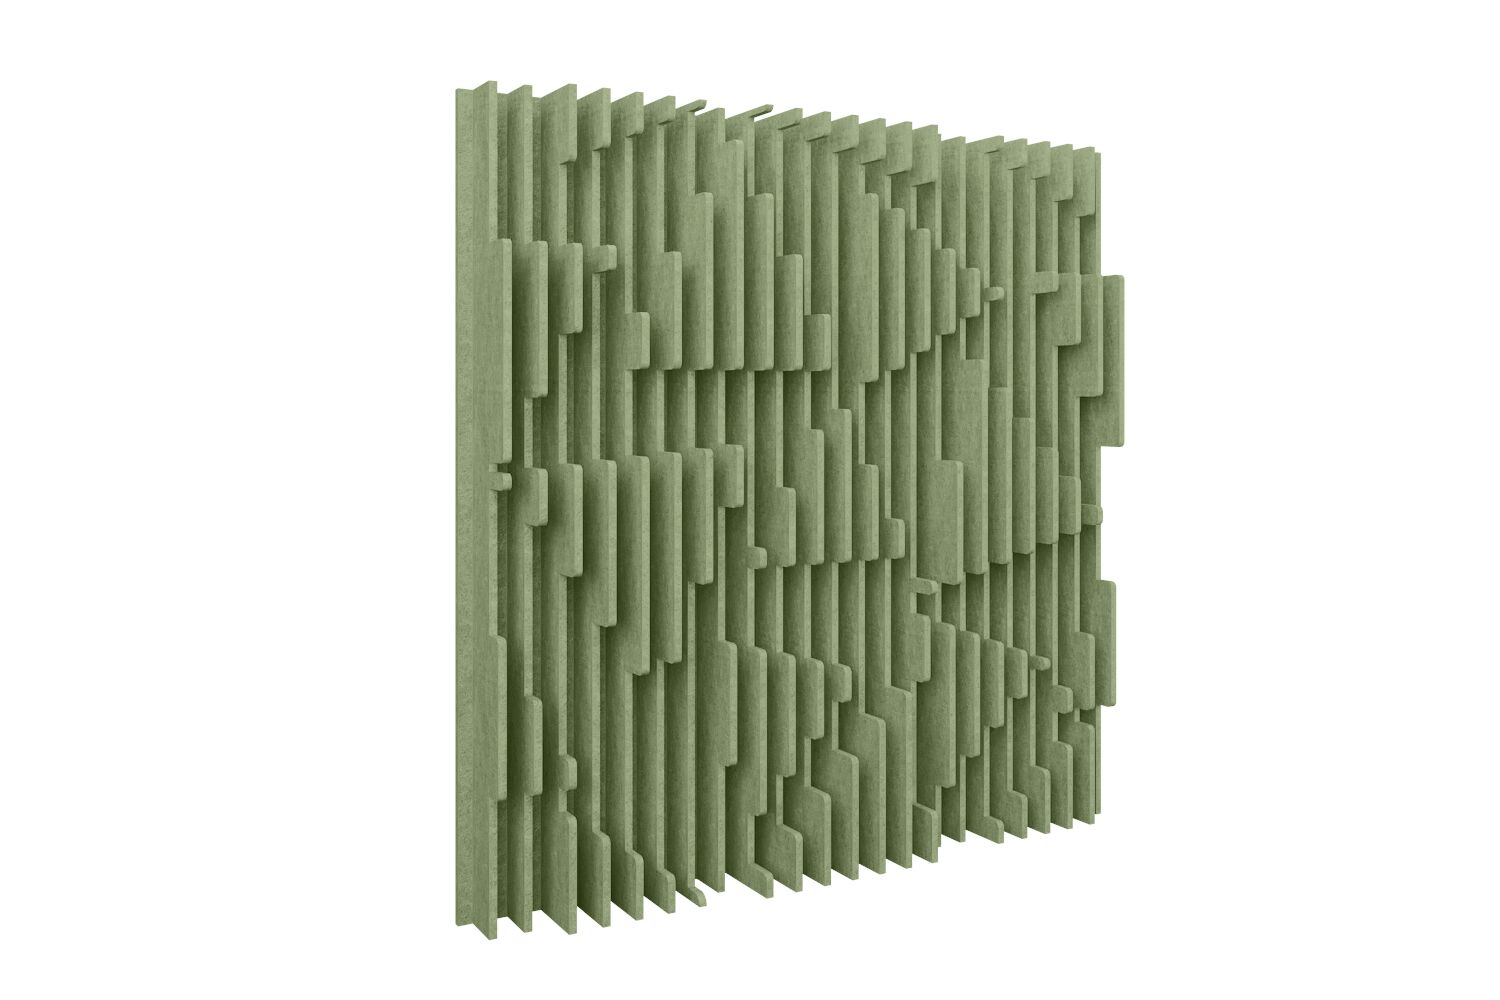 Tone Wall Abstract - Sage